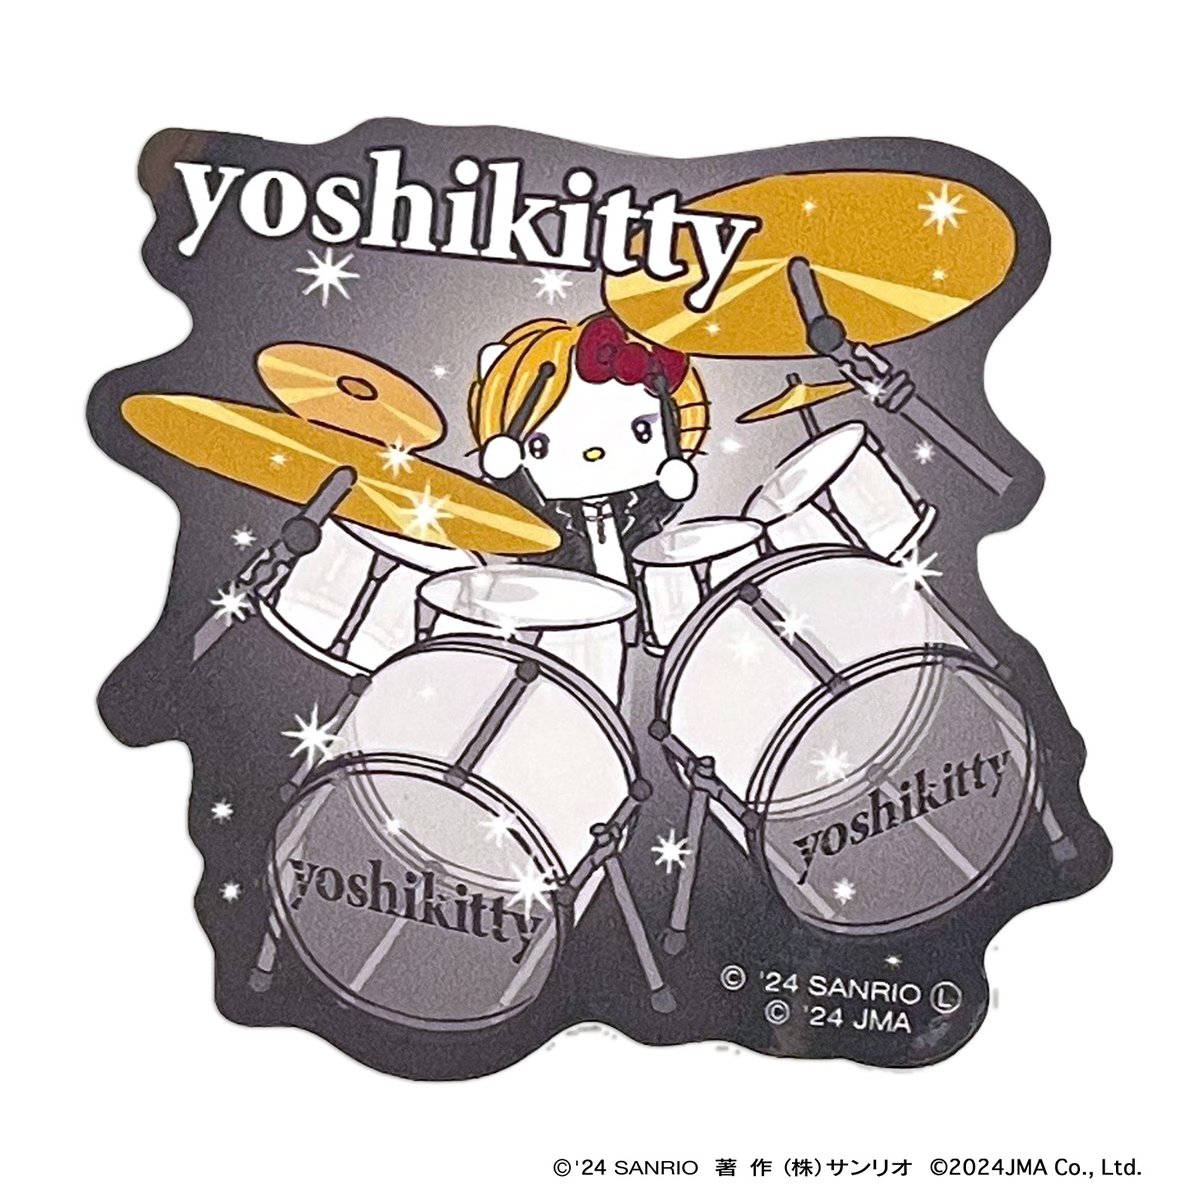 ⭐タフステッカー ドラム  ⭐

髪型を変えてよりクールになったyoshikitty新デザインのステッカー！熱いドラム演奏姿がカッコイイ！！
☆ポイントを獲得してyoshikittyを応援！

詳しくはコチラ
asunaro.shop-pro.jp/?pid=179715340

@YoshikiOfficial
#yoshikitty #yoshiki #xjapan  #hellokitty #sanrio